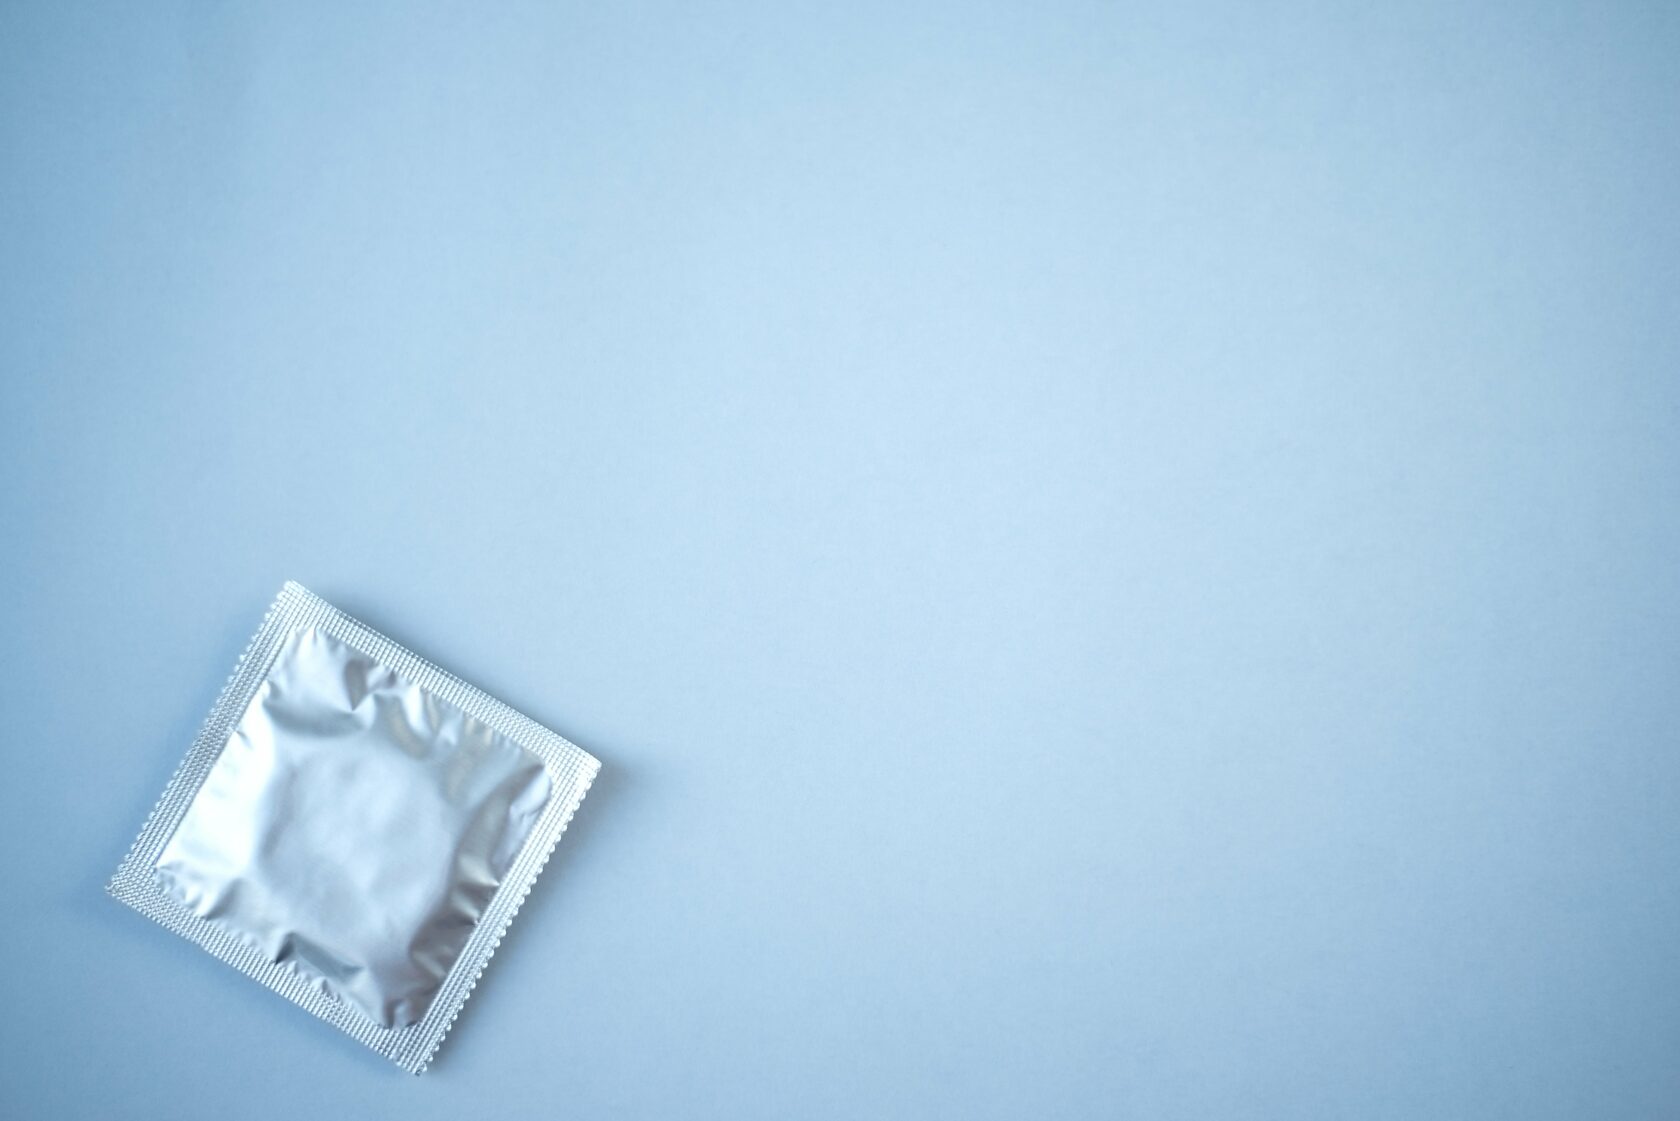 Сроки годности презервативов, как их правильно надевать и другие мифы и заблуждения